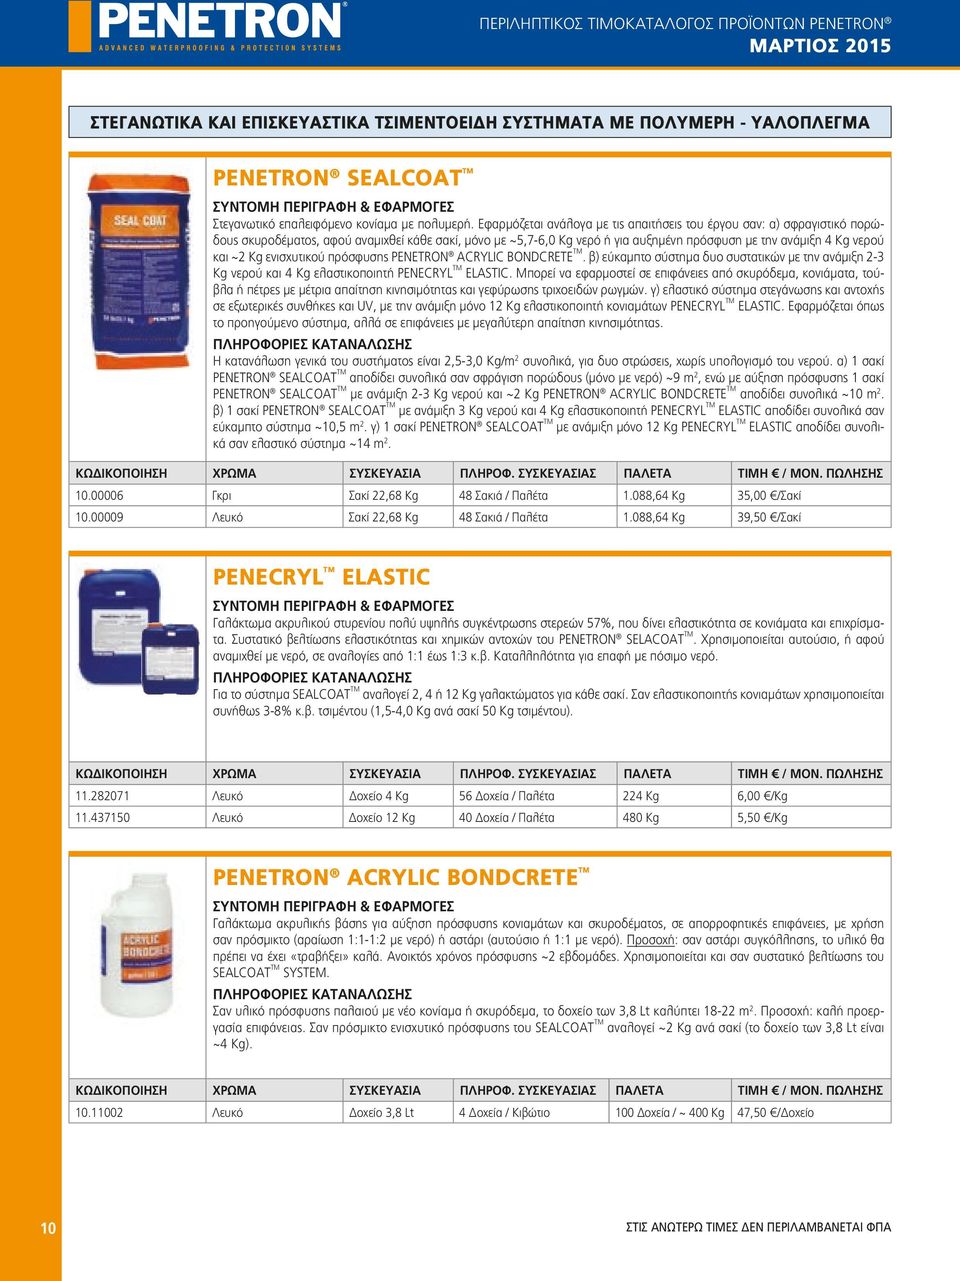 Kg ενισχυτικού πρόσφυσης PENETRON ACRYLIC BONDCRETE TM. β) εύκαμπτο σύστημα δυο συστατικών με την ανάμιξη 2-3 Kg νερού και 4 Kg ελαστικοποιητή PENECRYL TM ELASTIC.